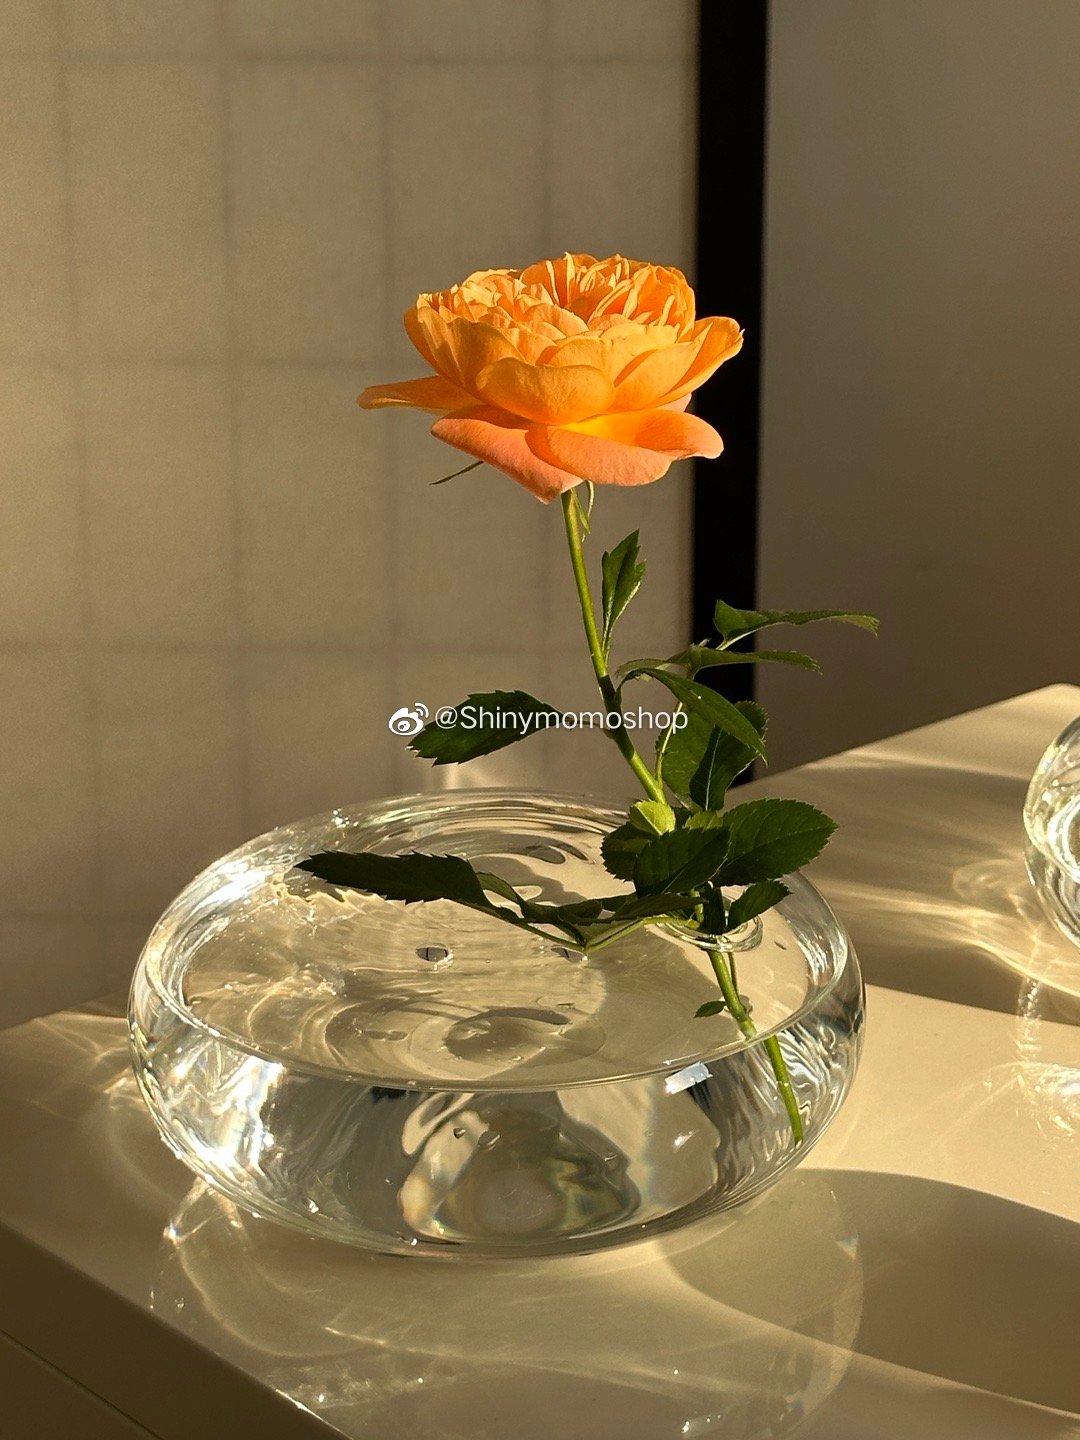 創意玻璃花瓶 輕薄扁瓶 ins日式花插裝飾居家臥室玄關